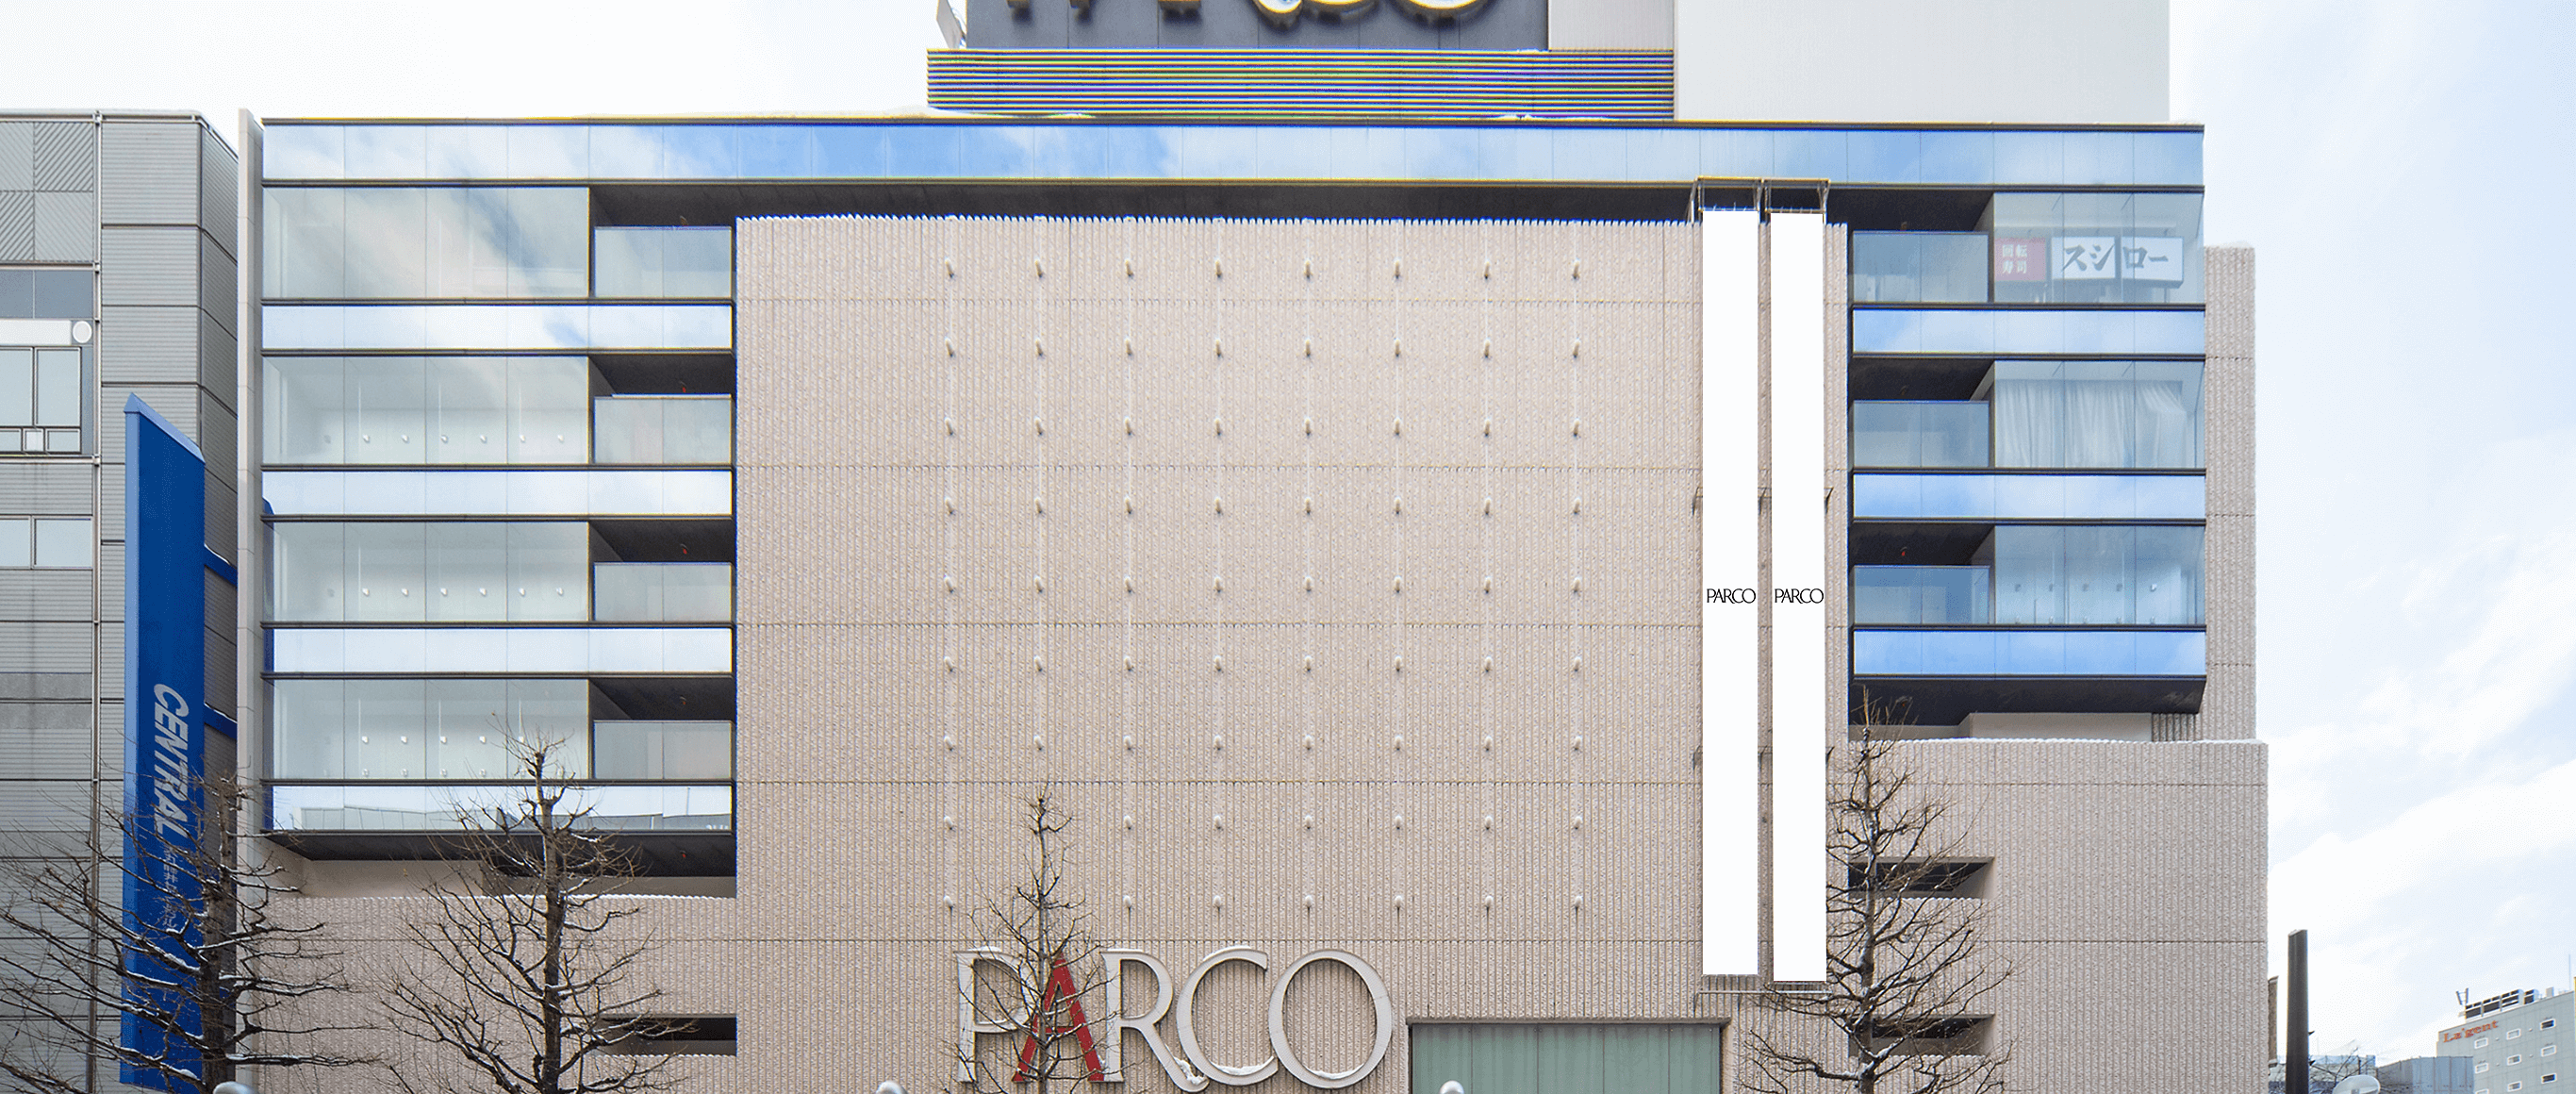 札幌PARCO 外壁懸垂幕